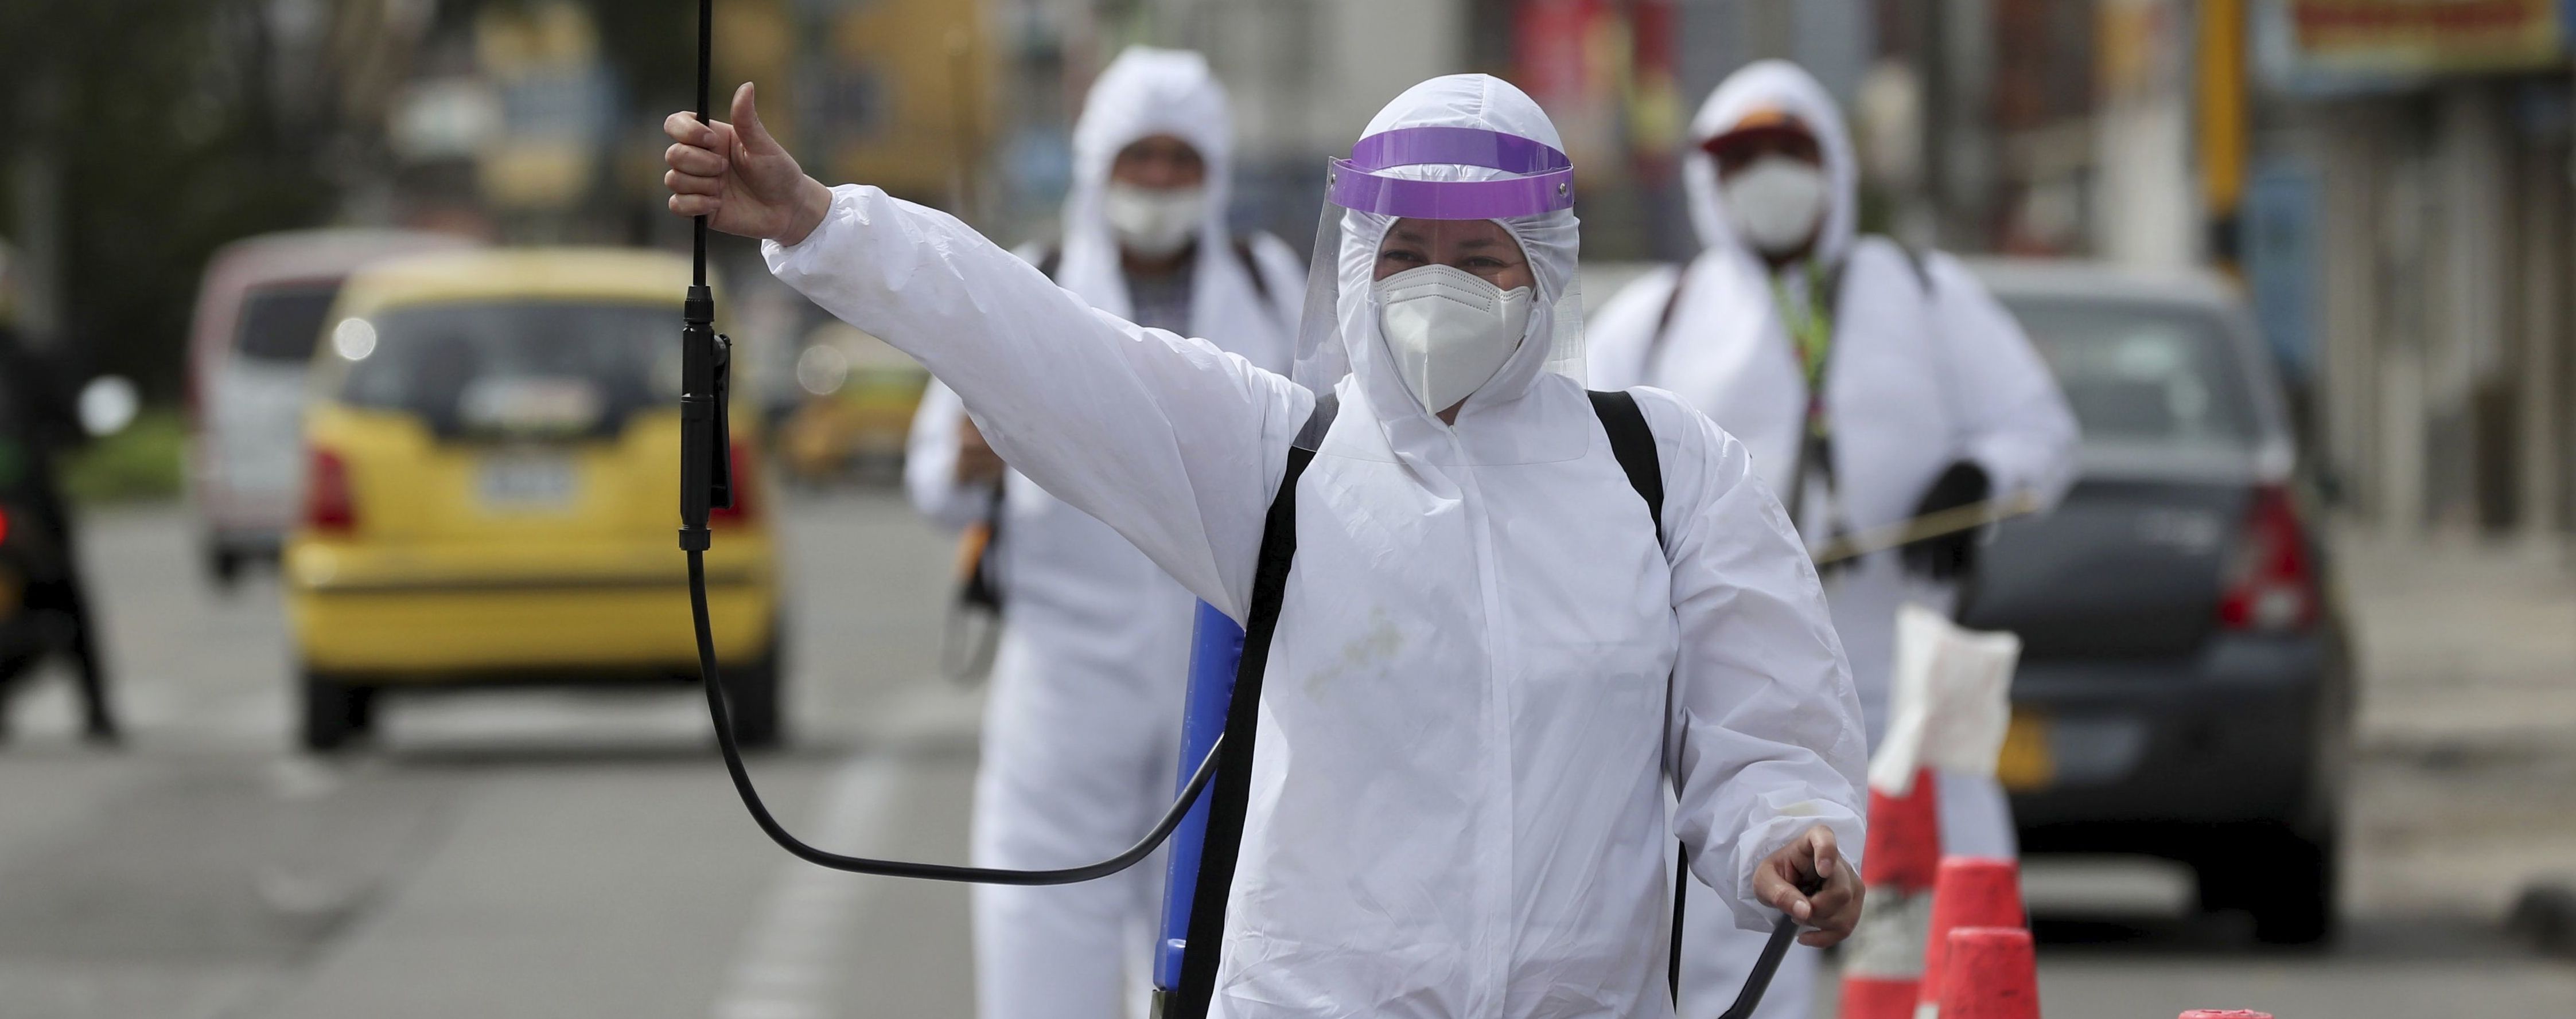 Эвакуация украинцев и одна из причин пандемии коронавируса. Пять новостей, которые вы могли проспать